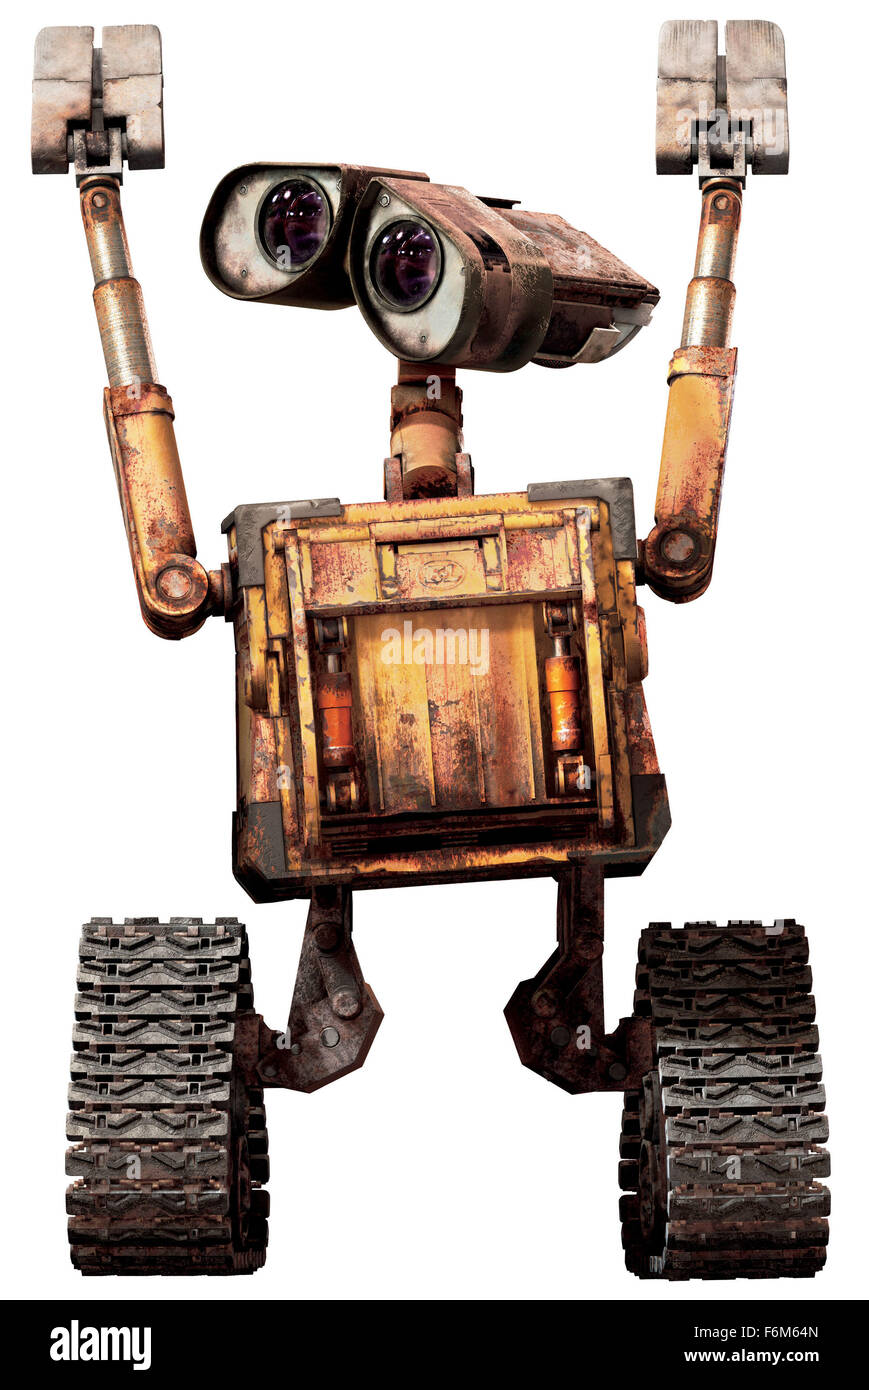 DATE DE SORTIE : 27 juin 2008. Titre du film : WALL-E. STUDIO : Pixar Animation Studios. Résumé : Dans un futur lointain, un petit robot de collecte des déchets de l'espace par inadvertance s'embarque dans un voyage qui sera finalement décider du sort de l'humanité. Photo : Ben Burtt comme WALL-E (voix). Banque D'Images